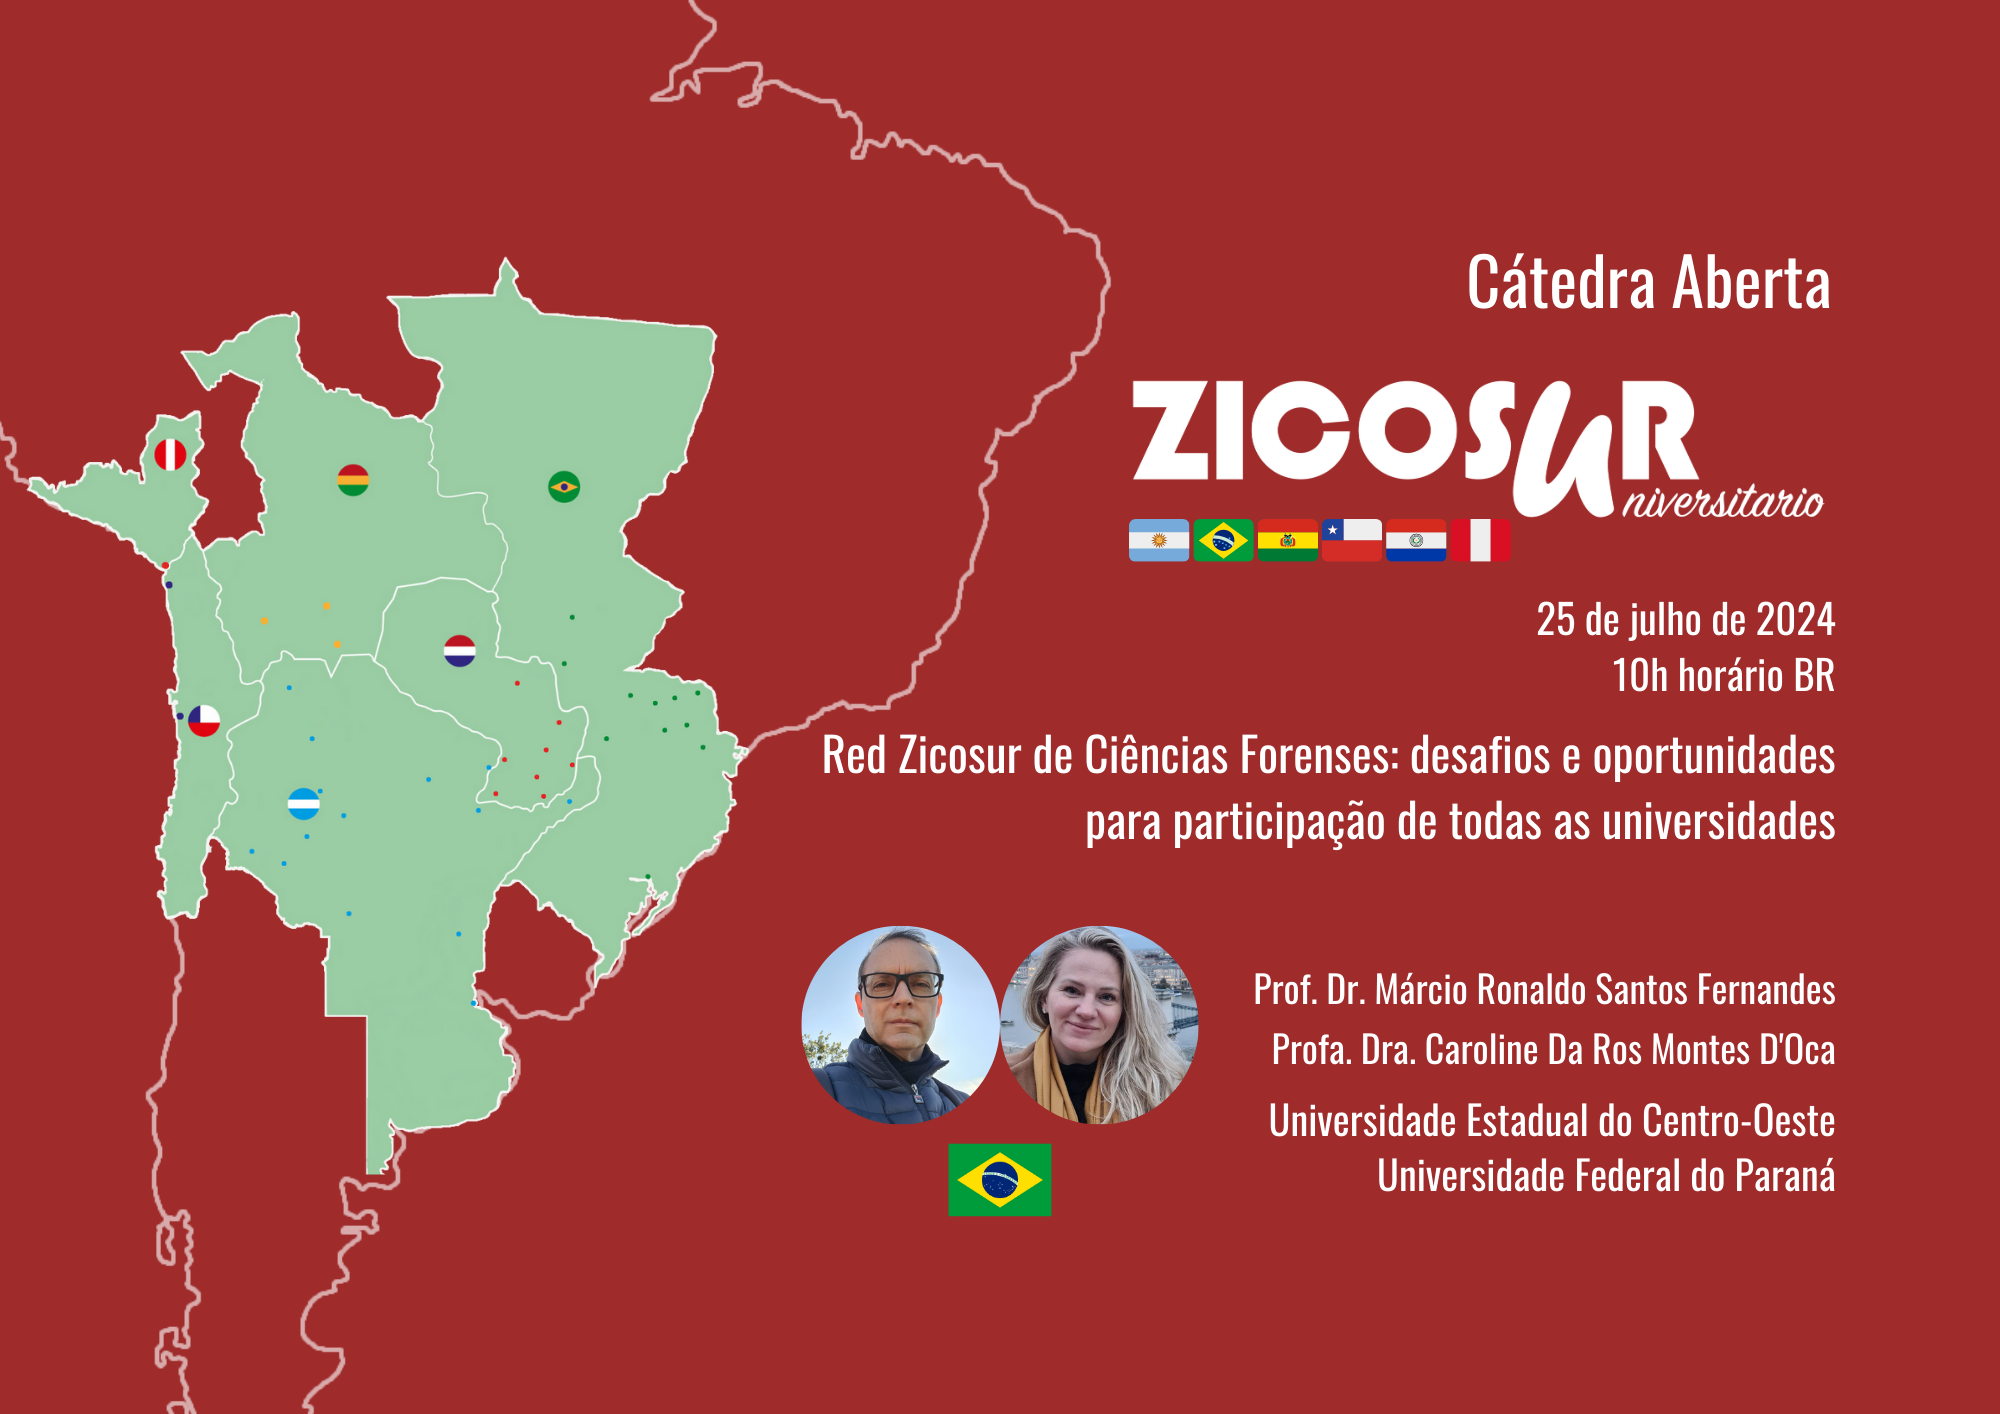 Cátedra Aberta ZICOSUR- Red Zicosur de Ciências Forenses: desafios e oportunidades para participação de todas as universidades